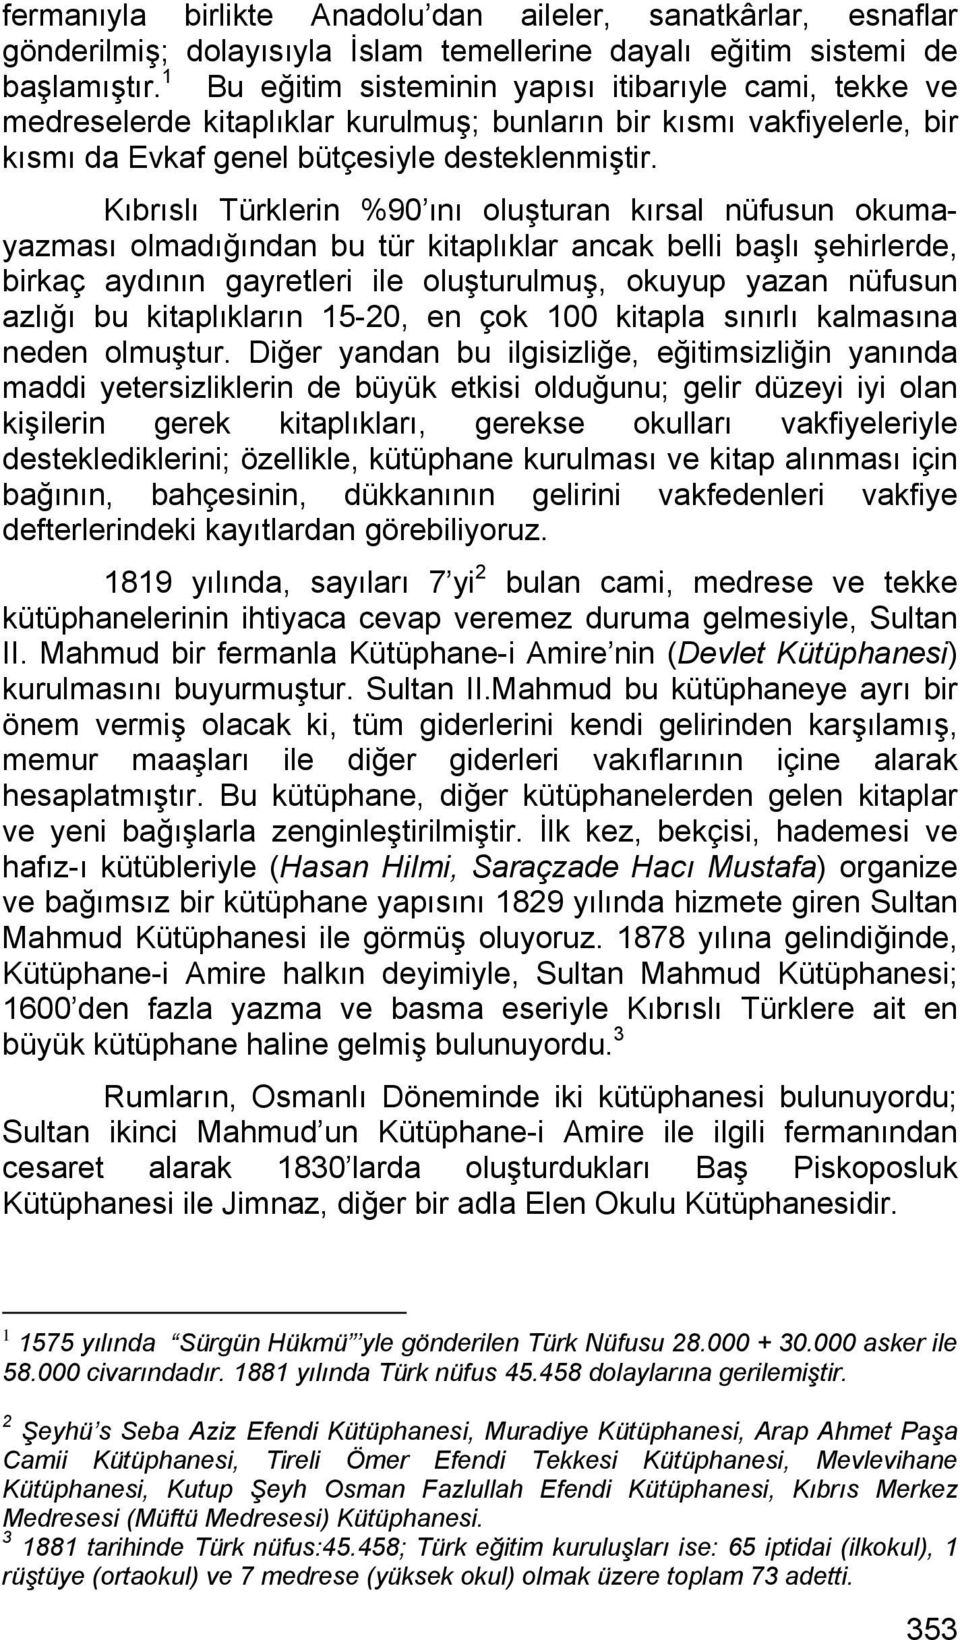 Kıbrıslı Türklerin %90 ını oluşturan kırsal nüfusun okumayazması olmadığından bu tür kitaplıklar ancak belli başlı şehirlerde, birkaç aydının gayretleri ile oluşturulmuş, okuyup yazan nüfusun azlığı